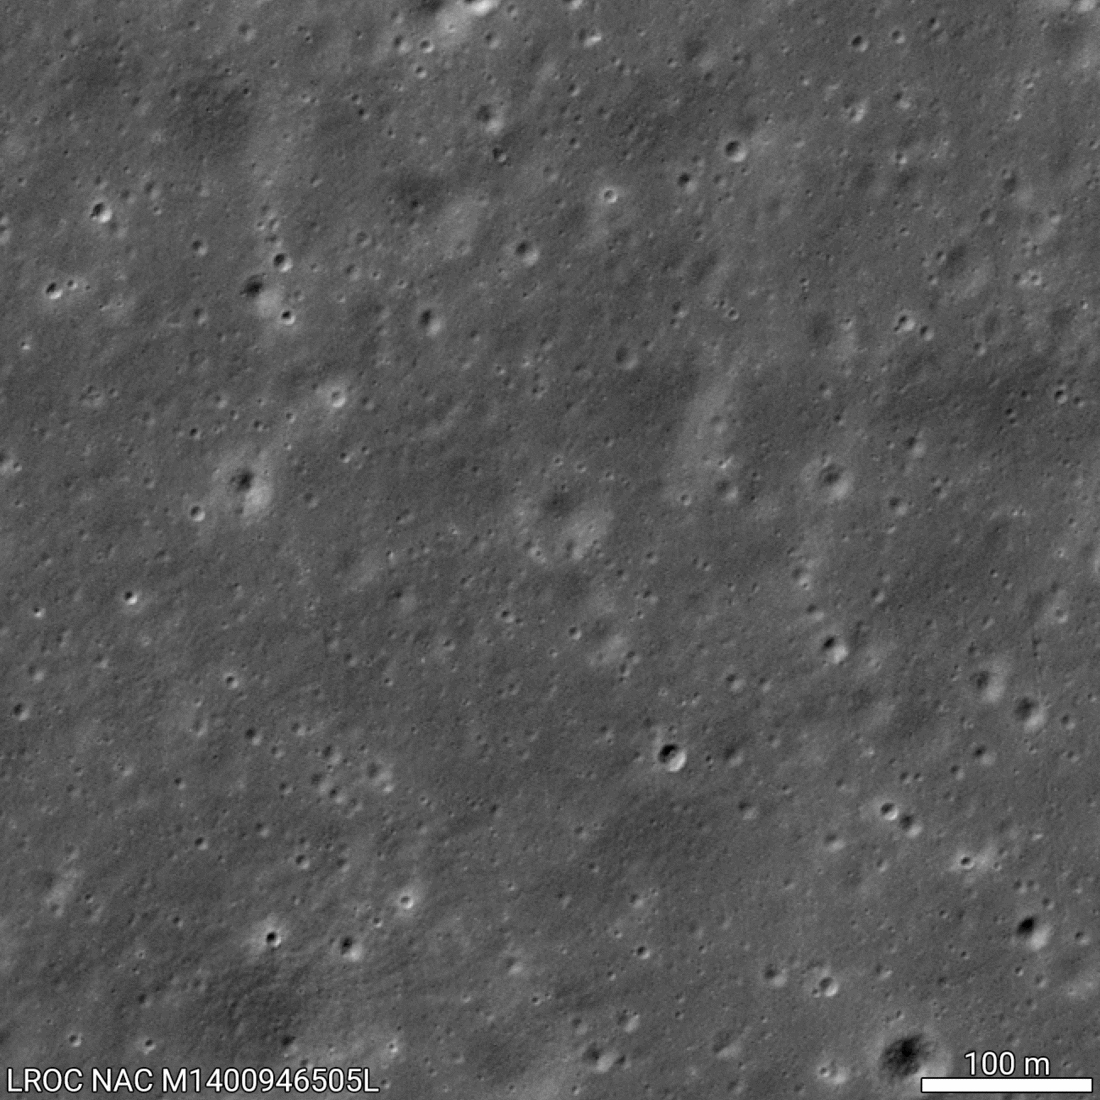 El orbitador lunar de la NASA detecta un módulo de aterrizaje chino en la cara oculta de la Luna (foto)